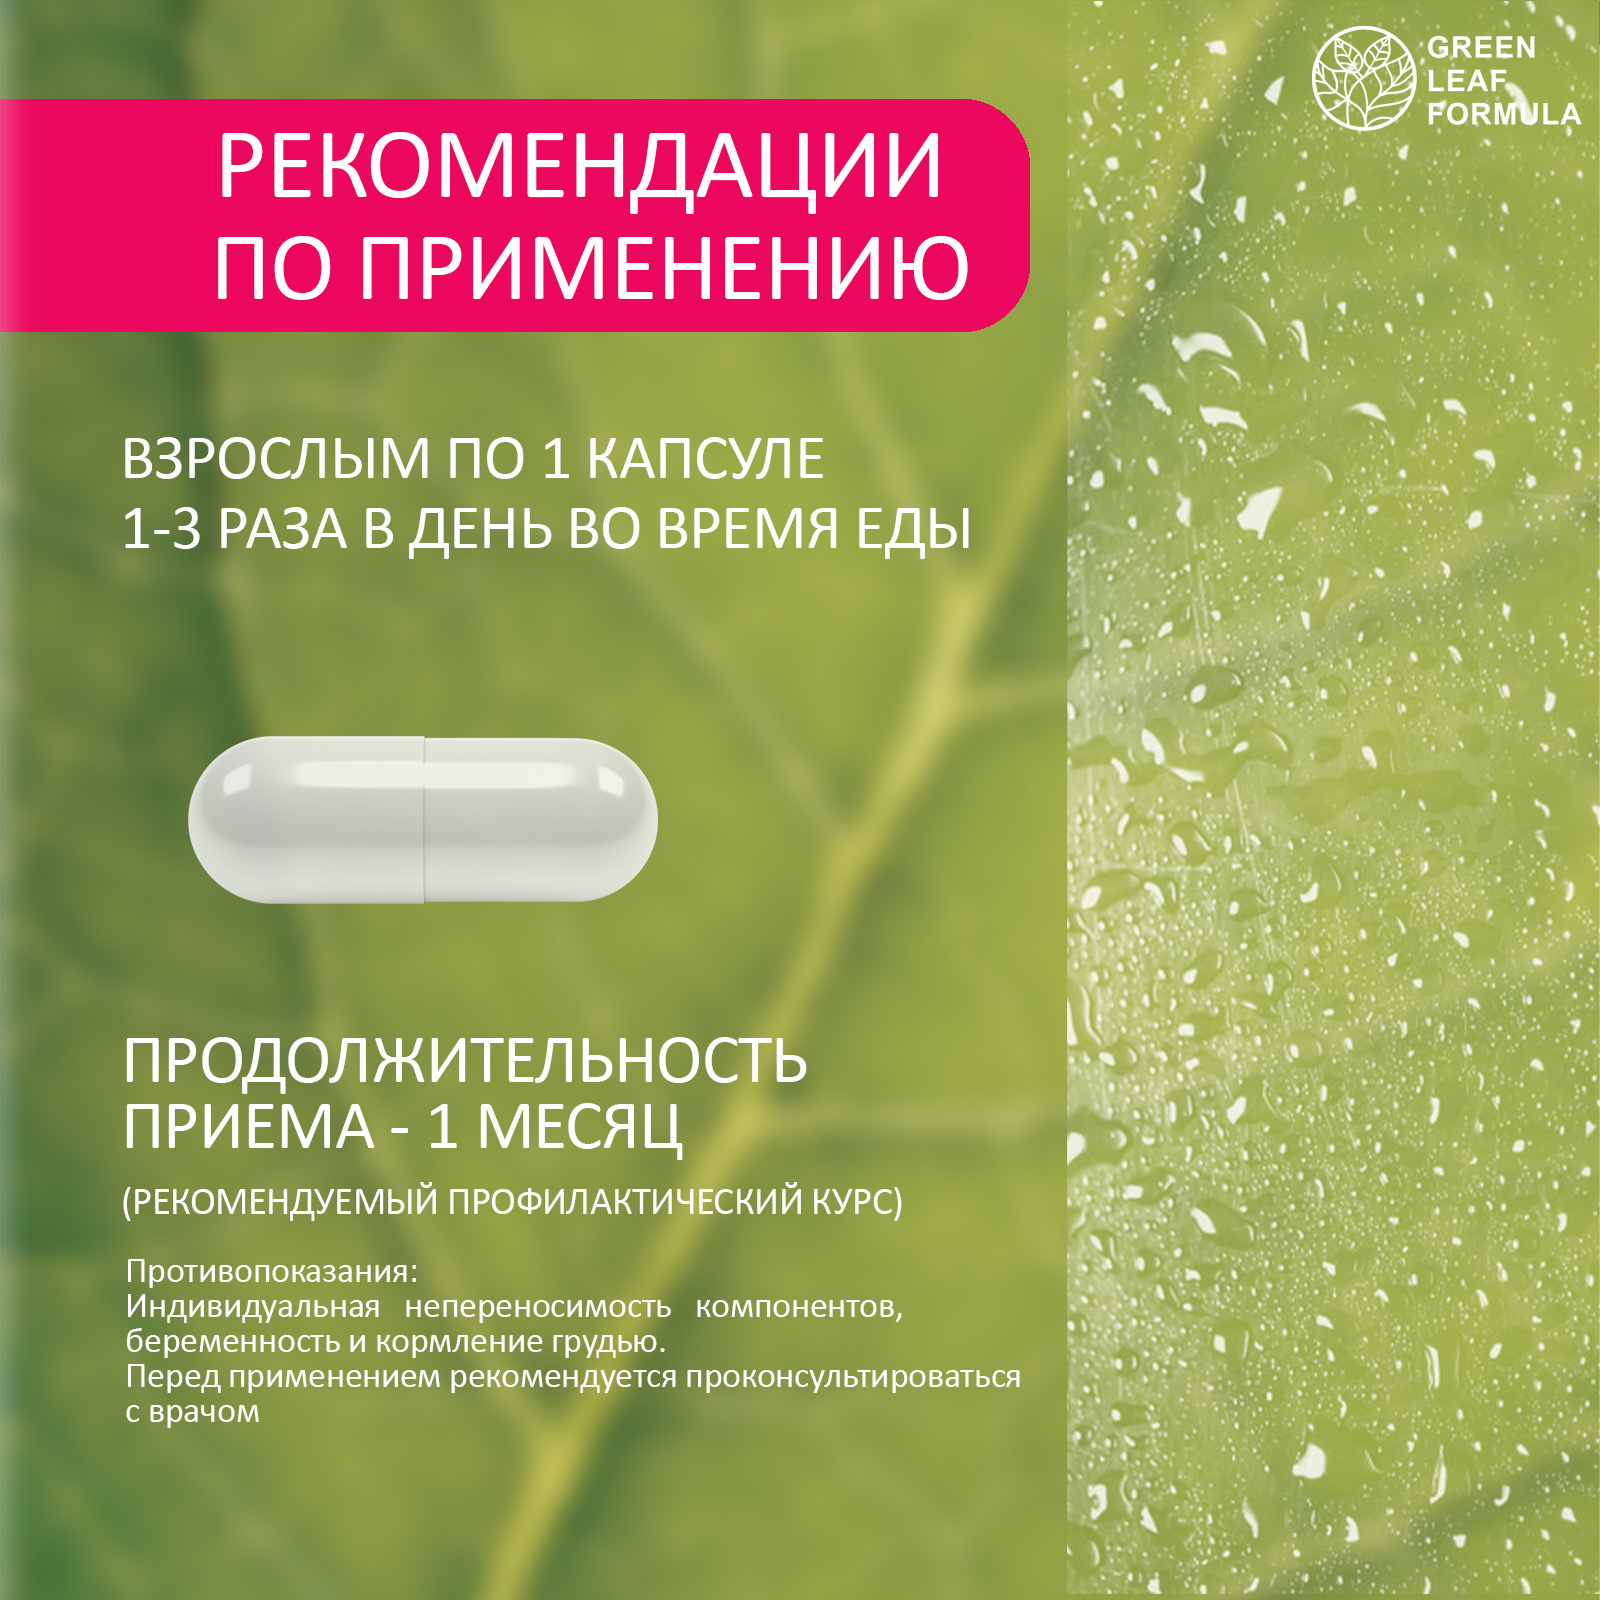 Пробиотик для женщин Green Leaf Formula фитоэстрогены витамин Д3 600 МЕ масло МСТ для энергии - фото 8